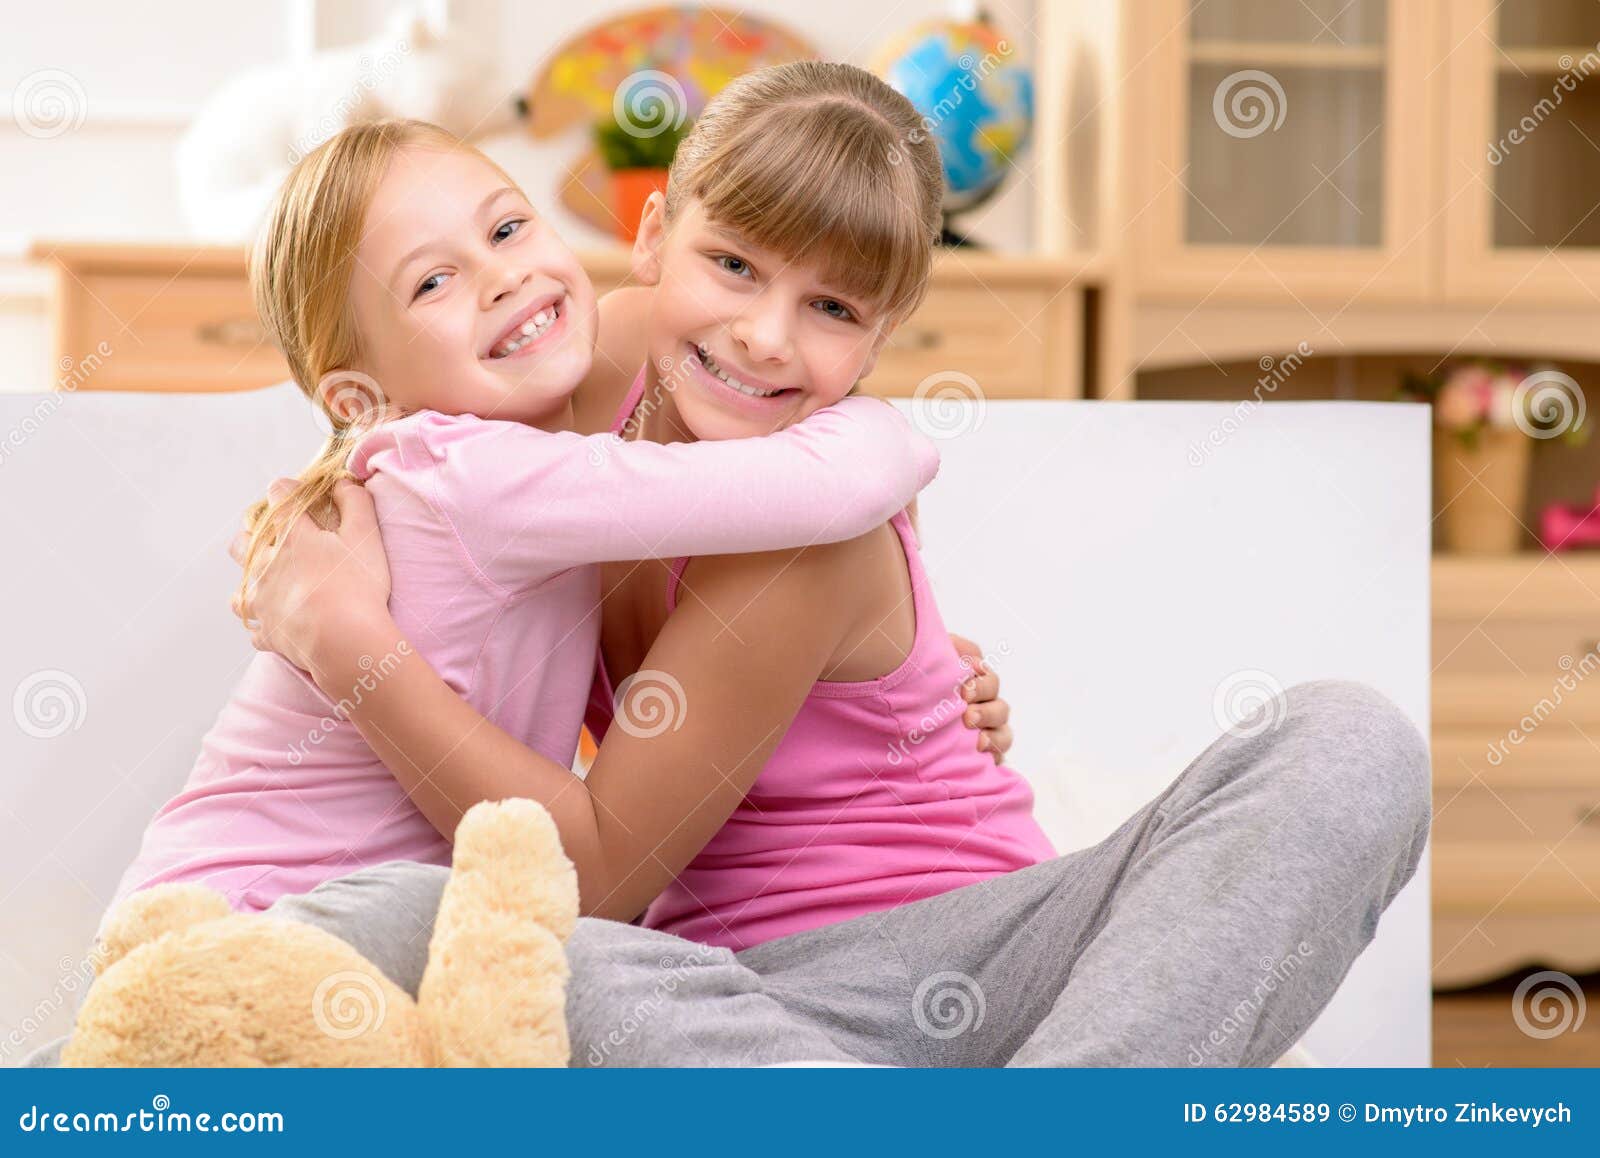 拥抱姐妹 库存图片. 图片 包括有 甜甜, 微笑, 子项, 一起, 人兽交, 逗人喜爱, 朋友, 年轻, 拥抱 - 8498963